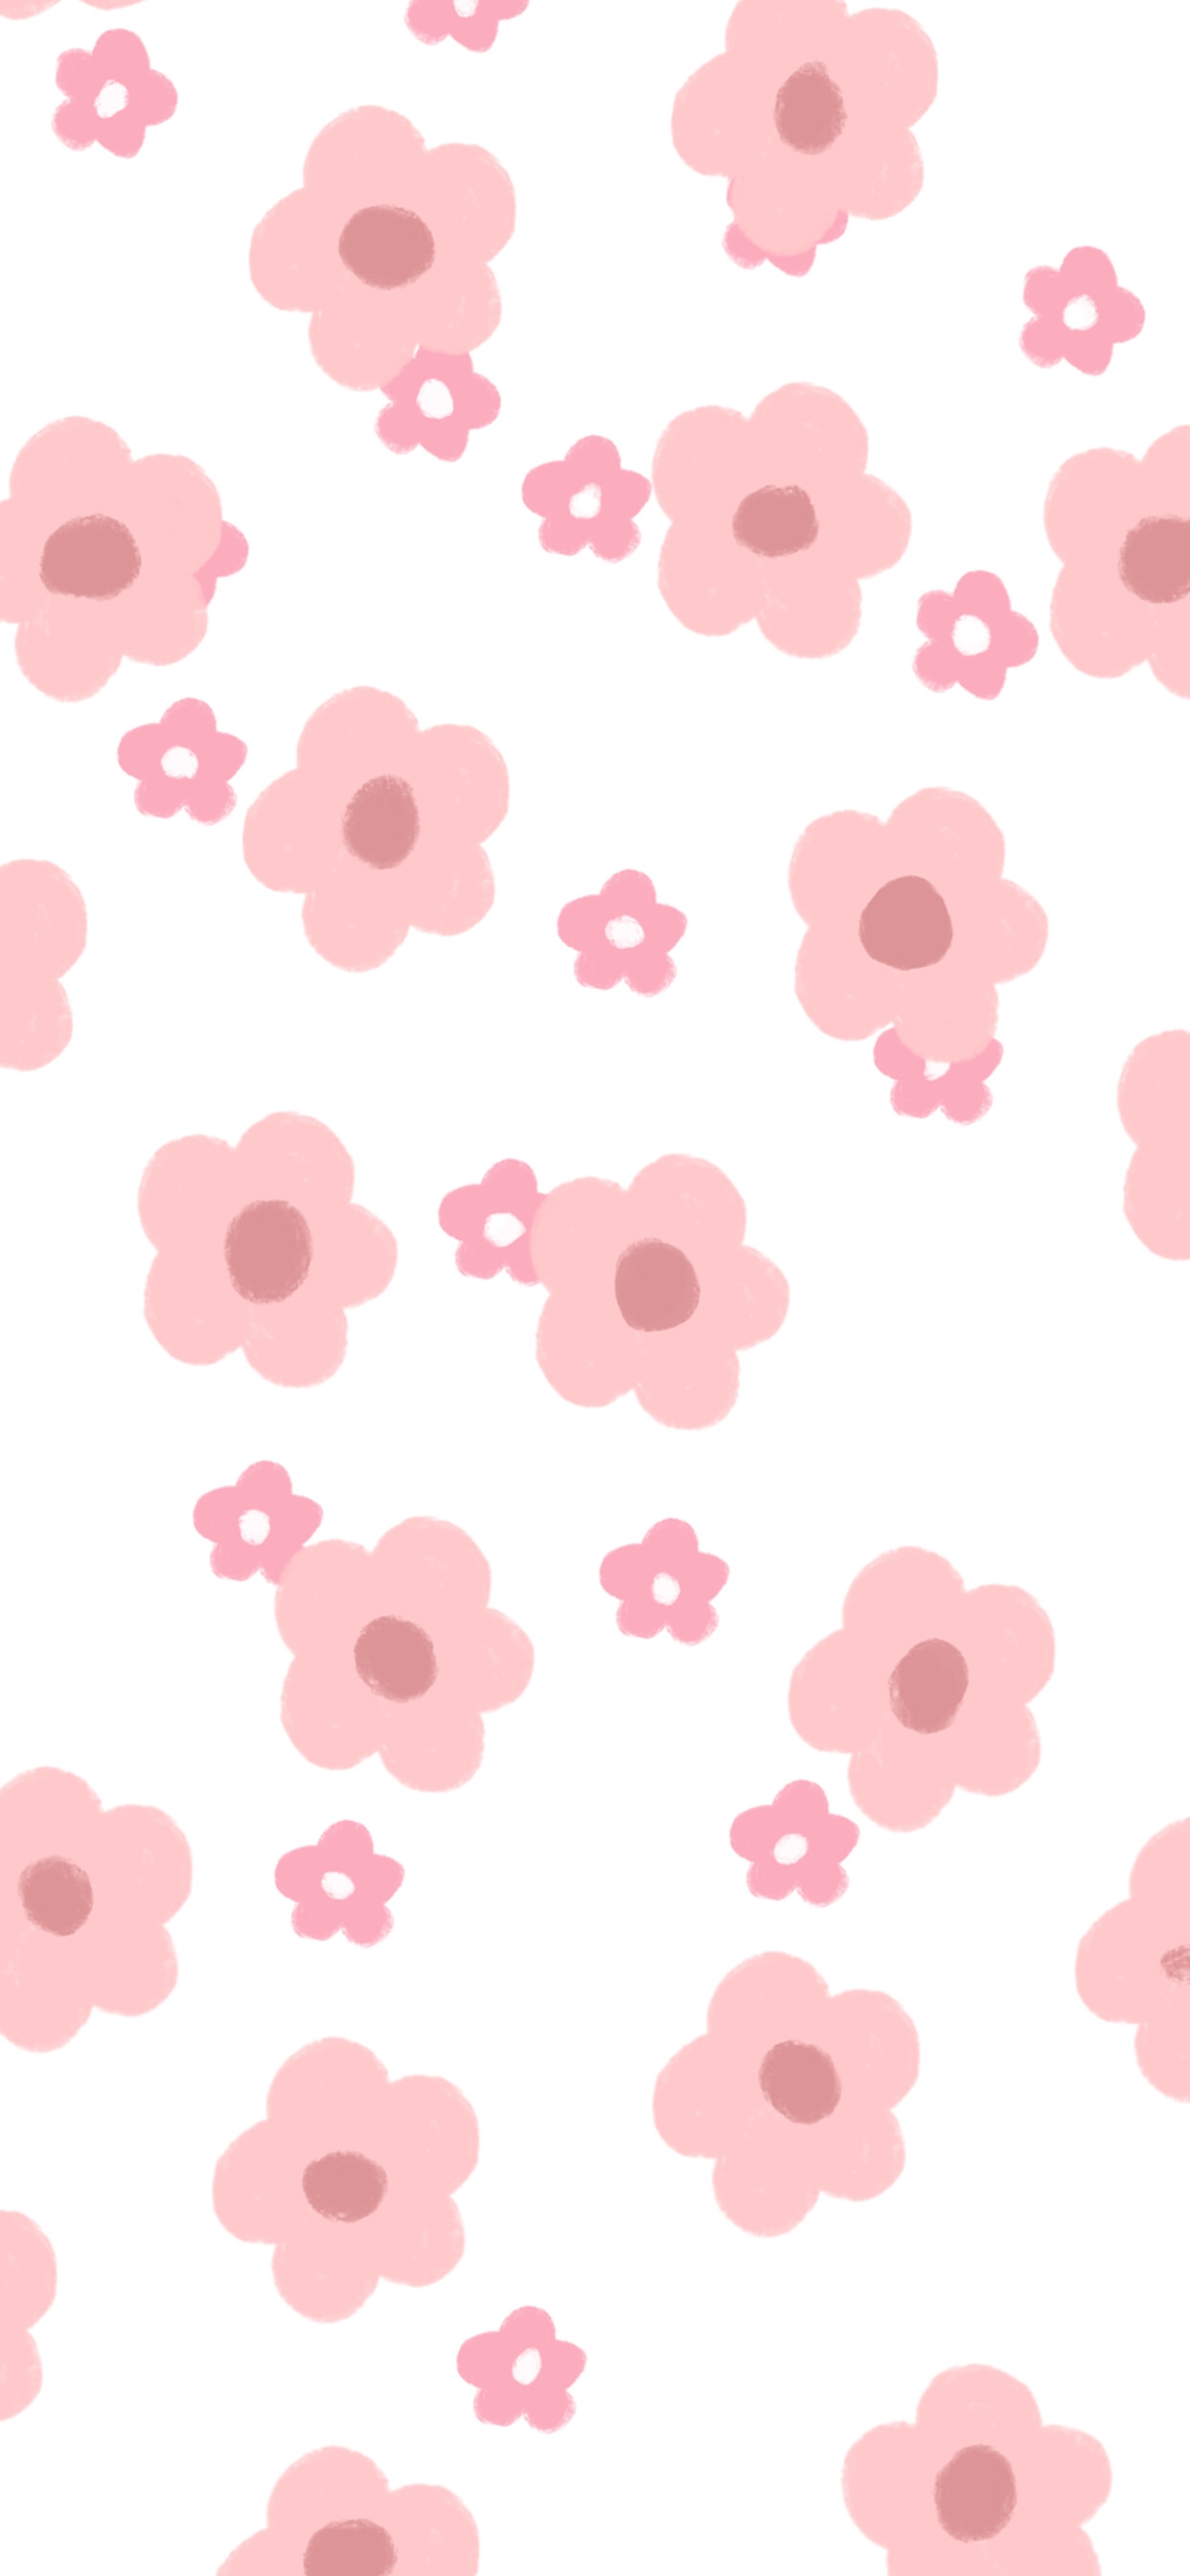 下载壁纸 通过Kisenok角色, 玫瑰, 粉红色, 花卉 免费为您的桌面分辨率的壁纸 5063x2847 — 图片 №656222